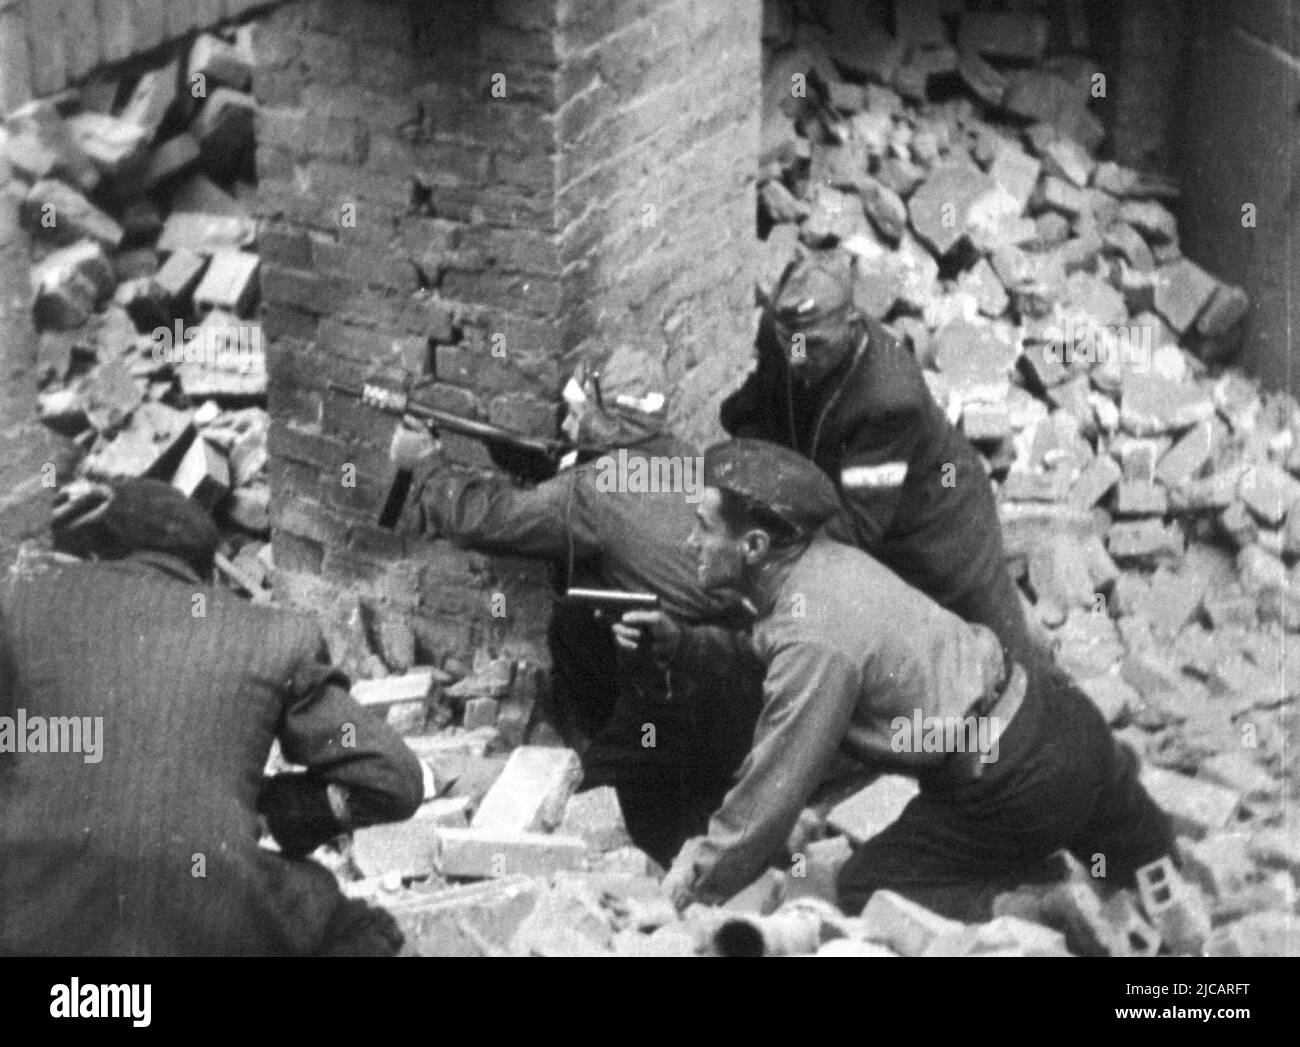 Armia Krajowa Soldaten kämpfen während des Warschauer Aufstands. Ein Mann ist mit einer Maschinenpistole von Błyskawica bewaffnet. Der Warschauer Aufstand war ein massiver Versuch der polnischen Heimatarmee, die Wehrmacht und die SS-Besatzung gegen Ende WW2 zu besiegen. Stockfoto